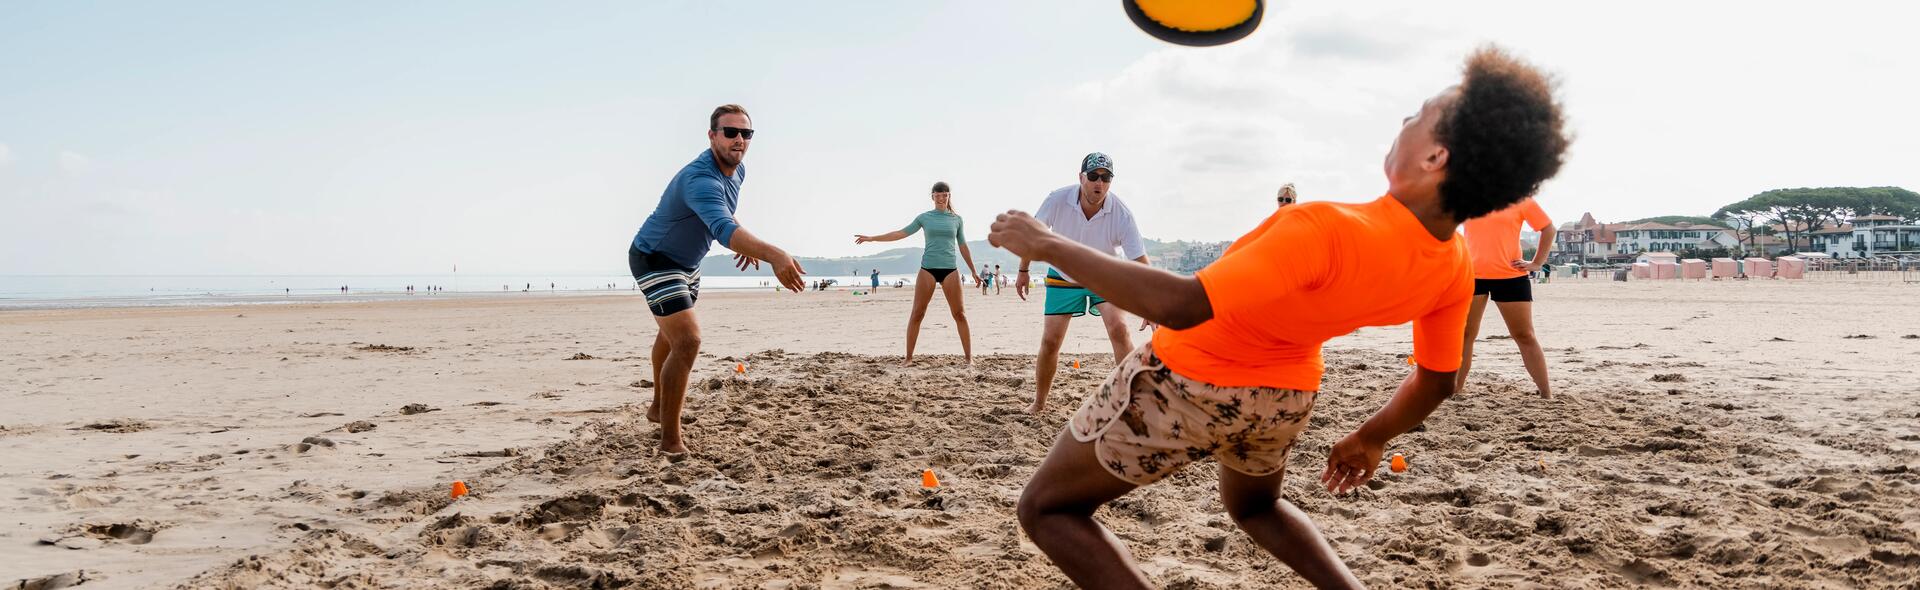 grupa osób grających frisbee